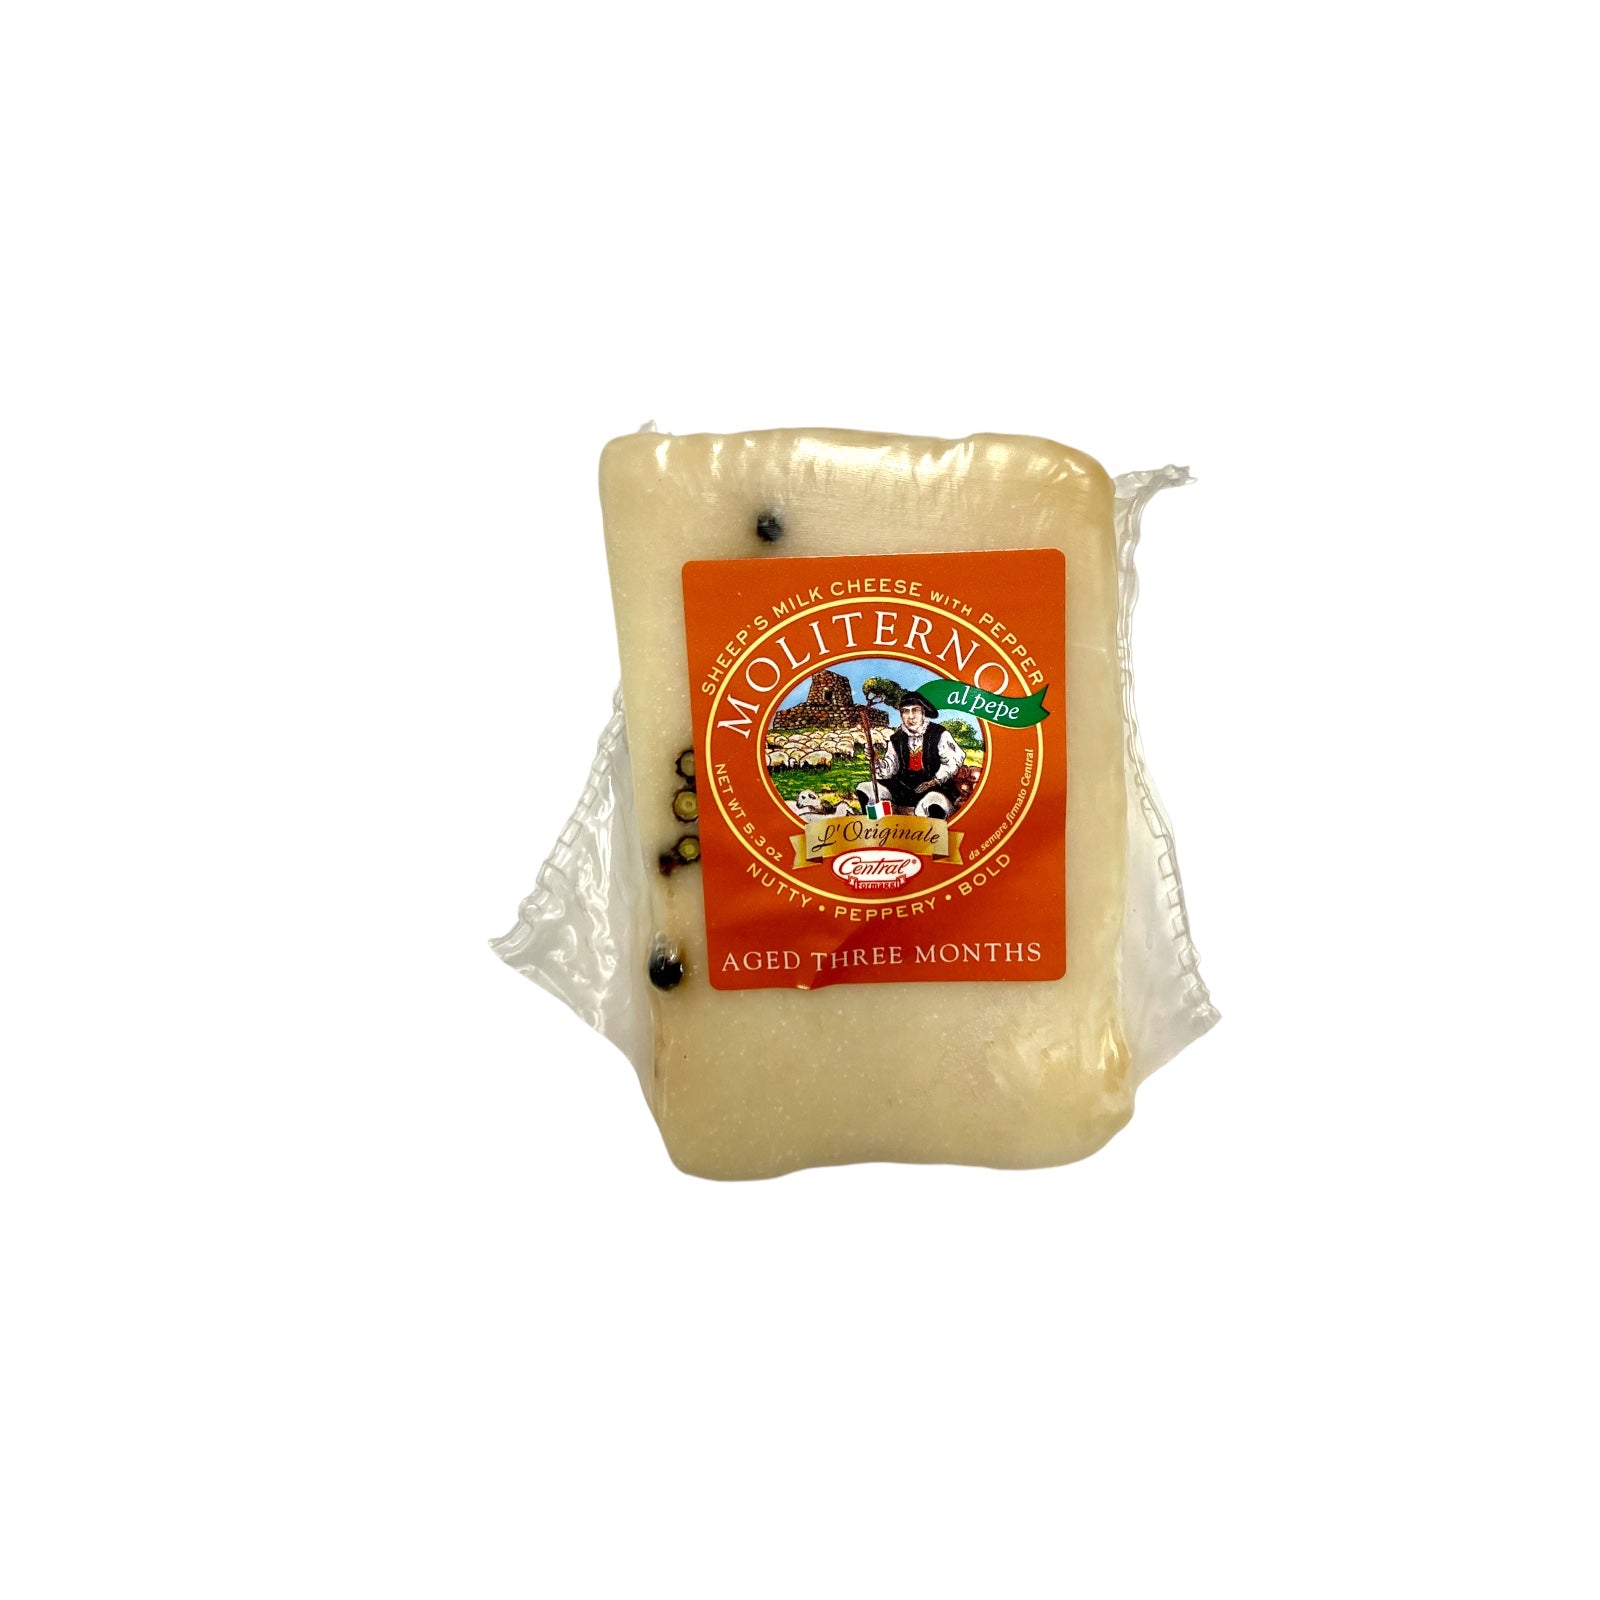 Pecorino Moliterno Sheep’s Milk Cheese With Black Peppercorn